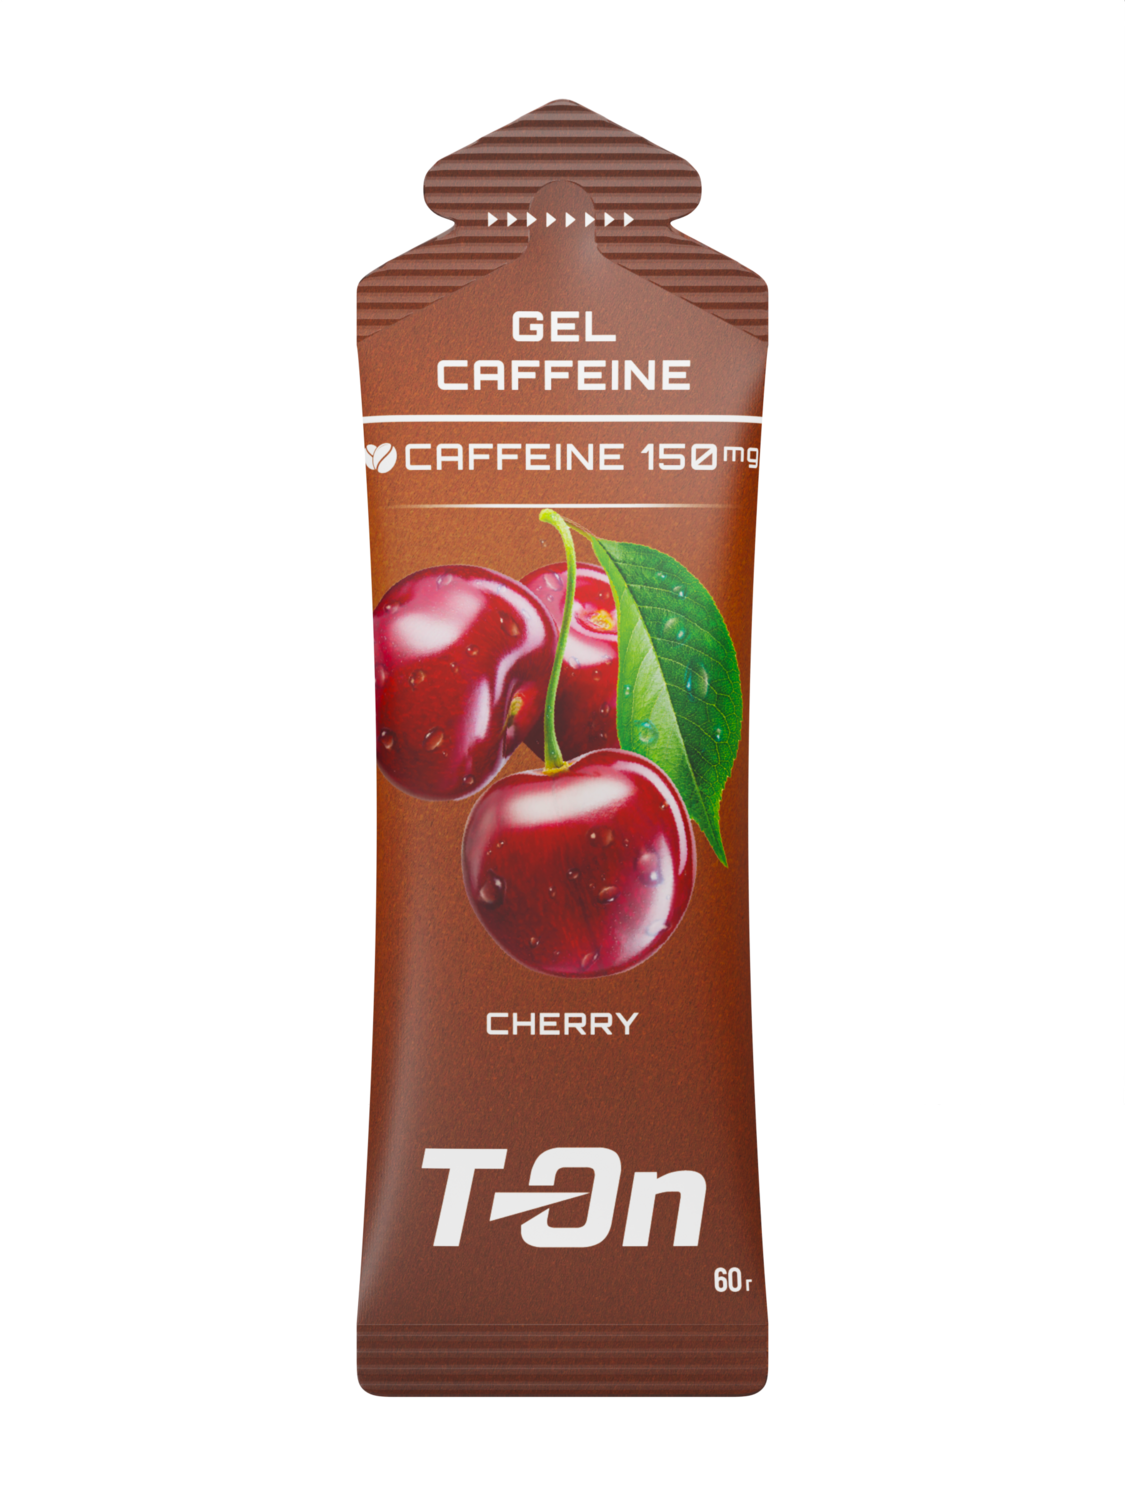 Гель с кофеином T-On Caffeine Gel 150 mg